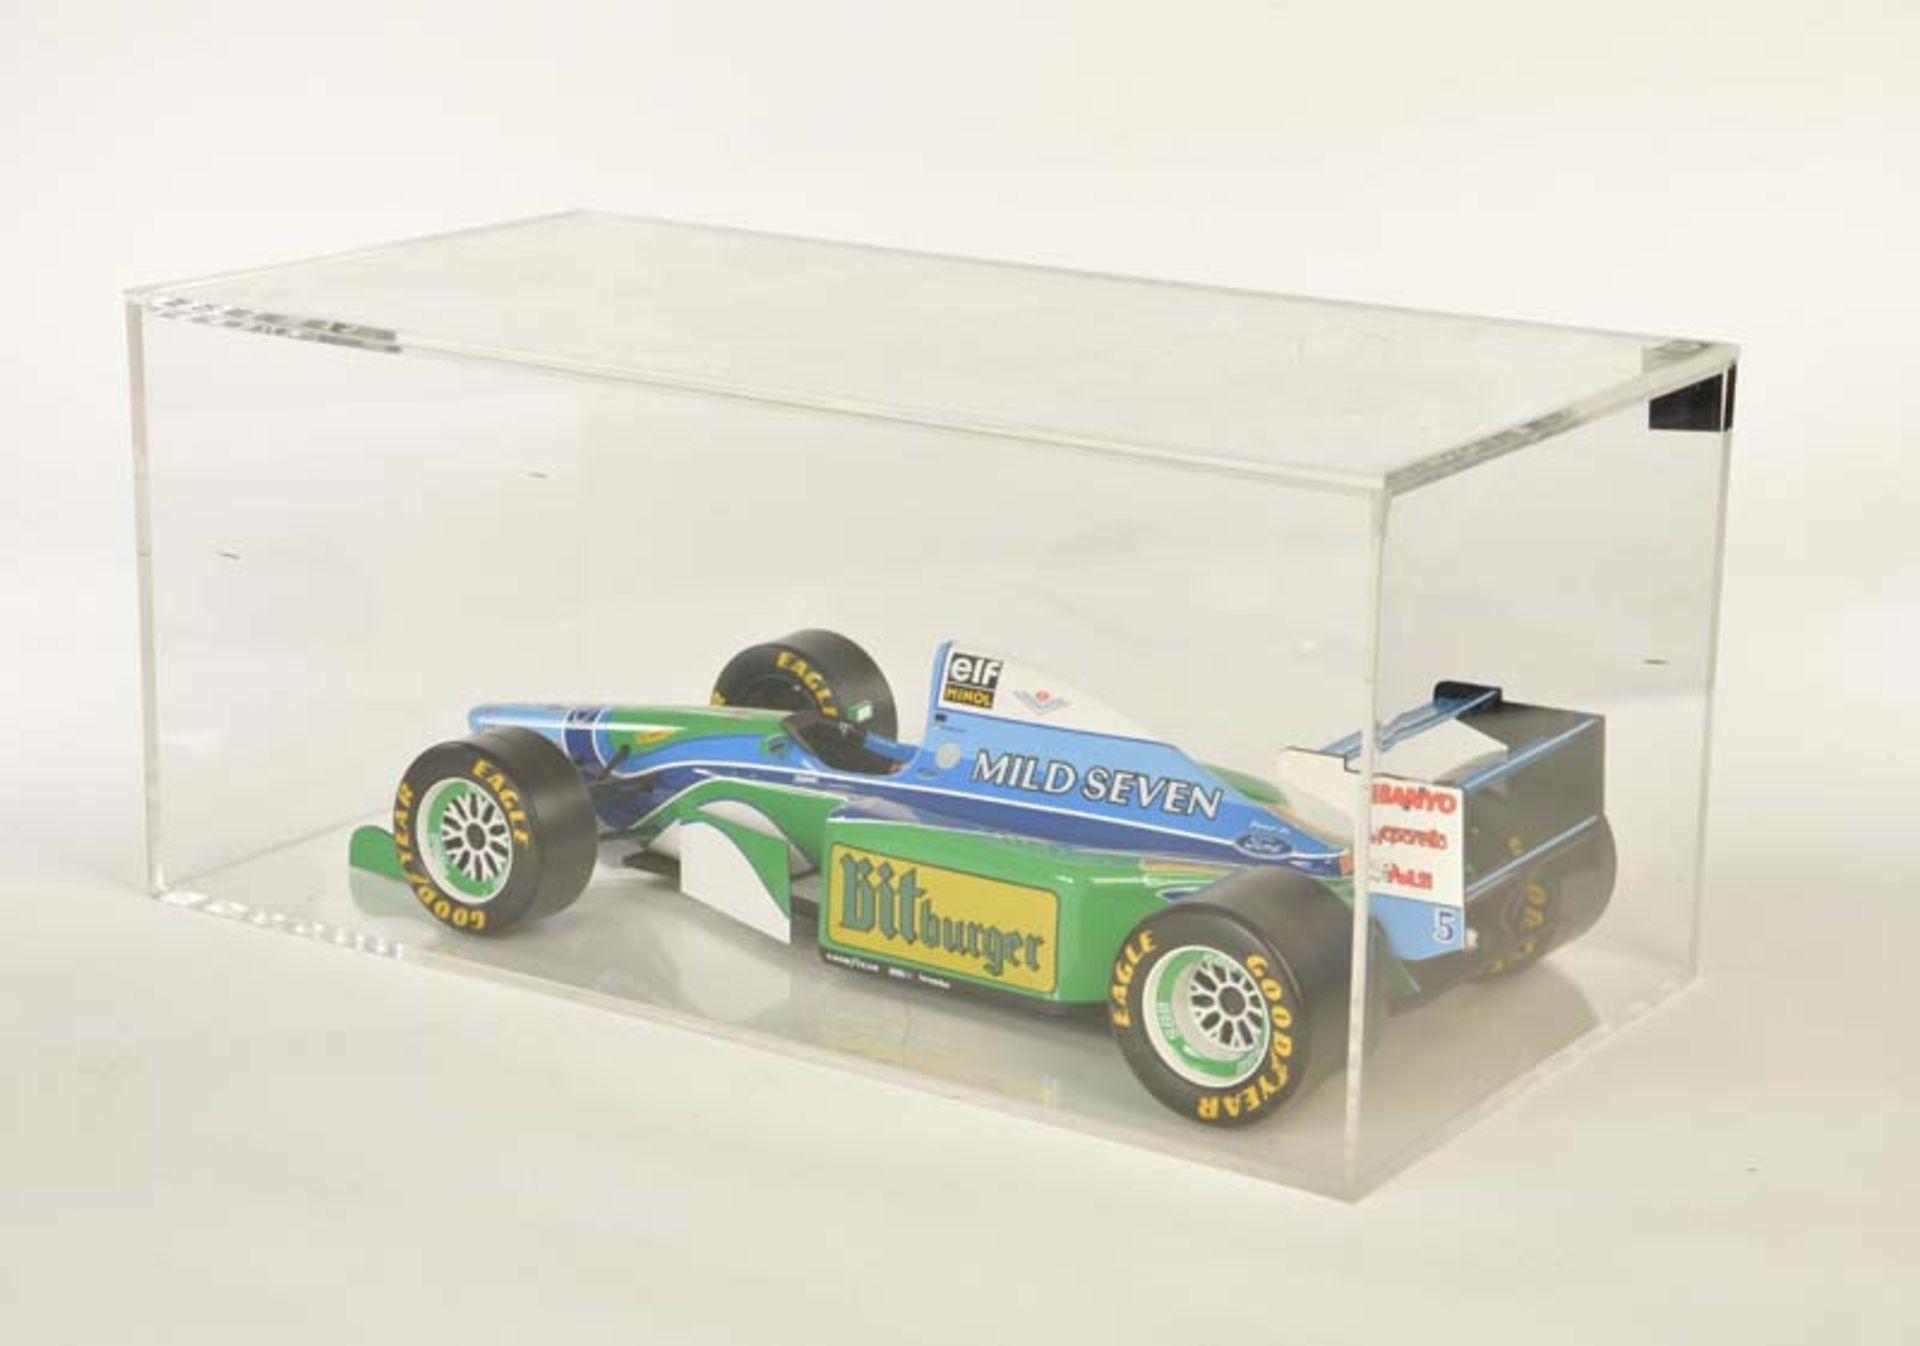 Benetton Ford Michael Schumacher Formel 1 Rennwagen - Image 2 of 2